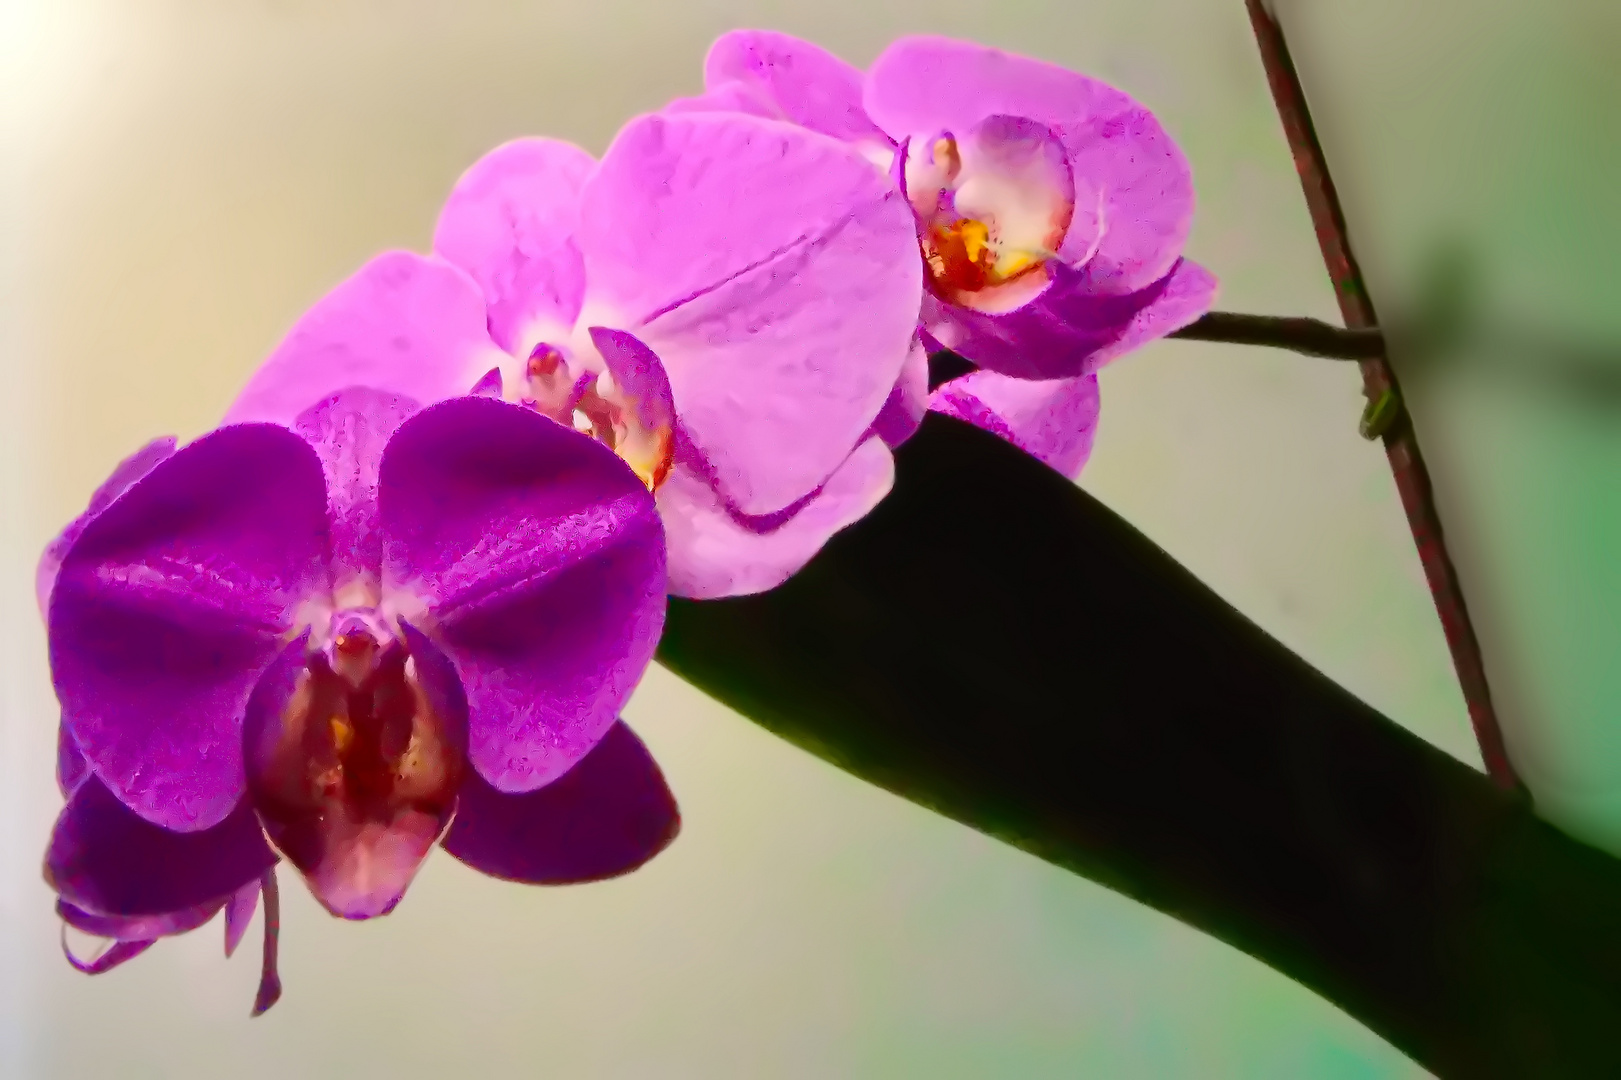 Sonntag mit Sonne - Im Sonnenlicht euchtender Blütenzauber einer Orchidee